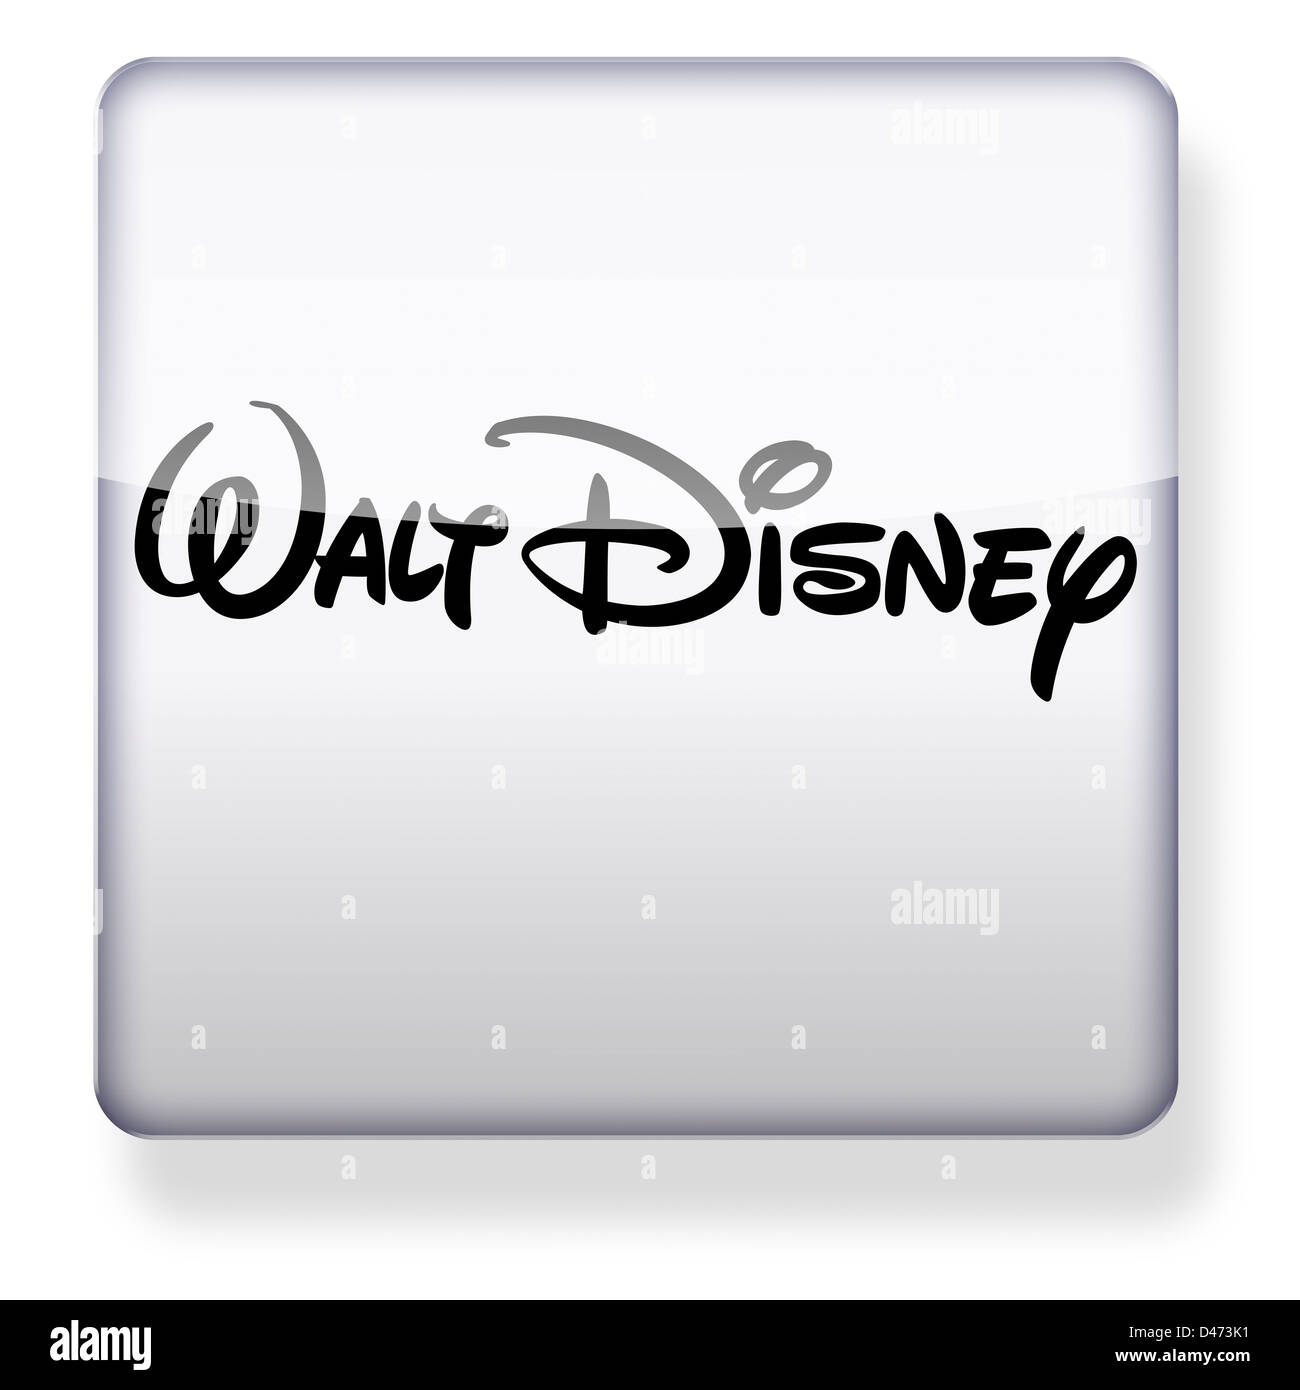 Logotipo de Walt Disney como el icono de una aplicación. Trazado de recorte incluido. Foto de stock